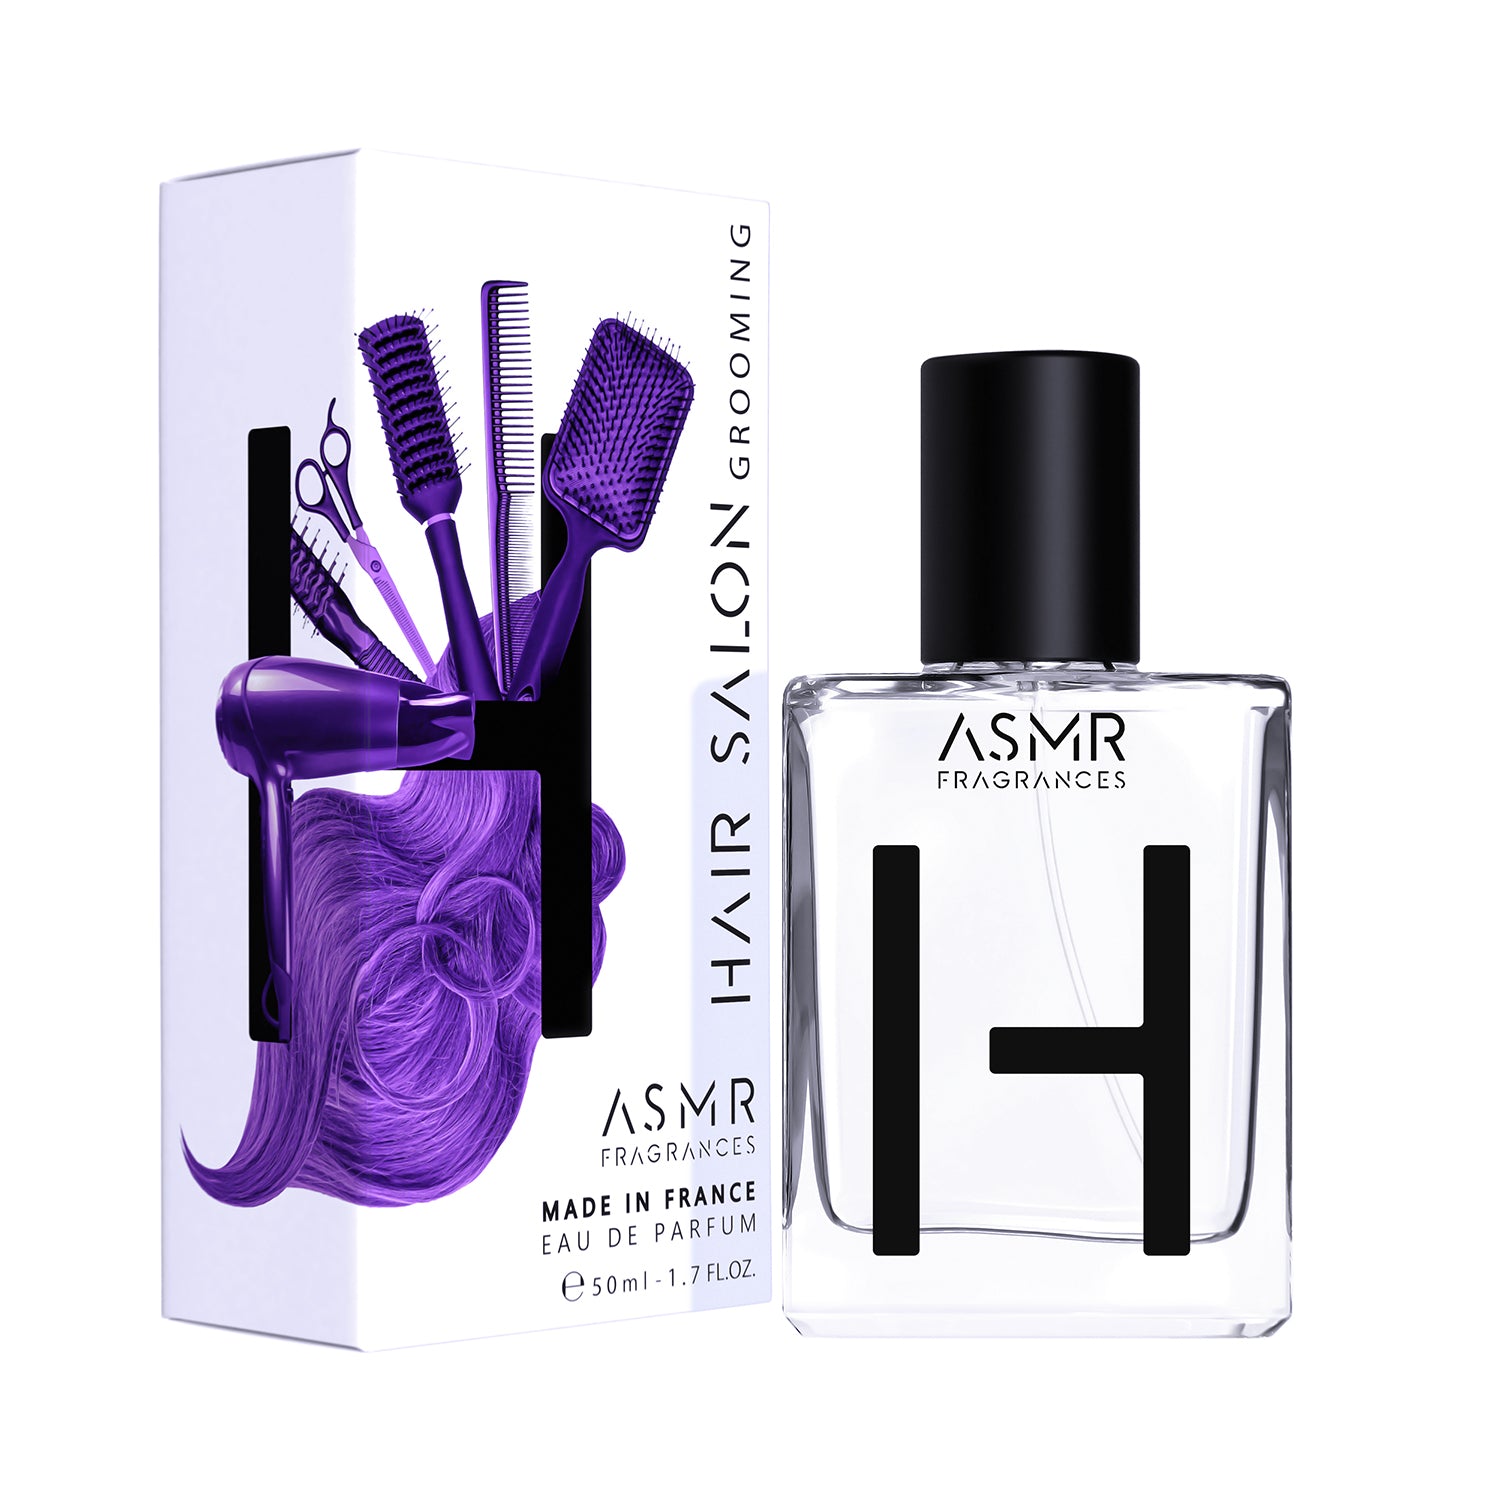 ASMR Fragrances | Hair Salon Grooming Abfüllung